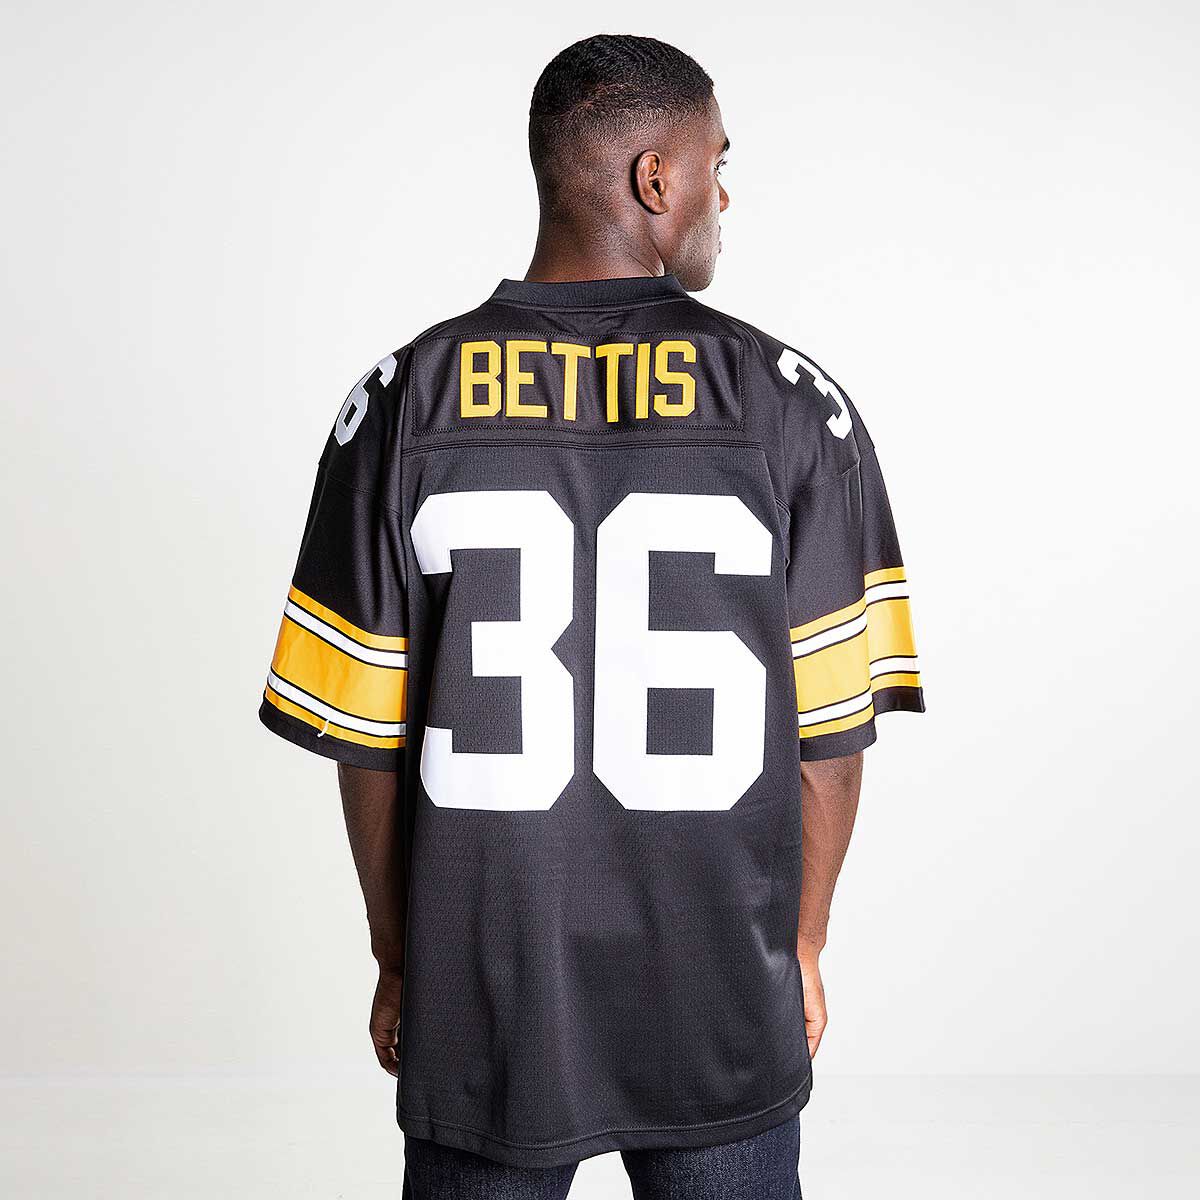 NFL ゲームシャツ BETTIS 36